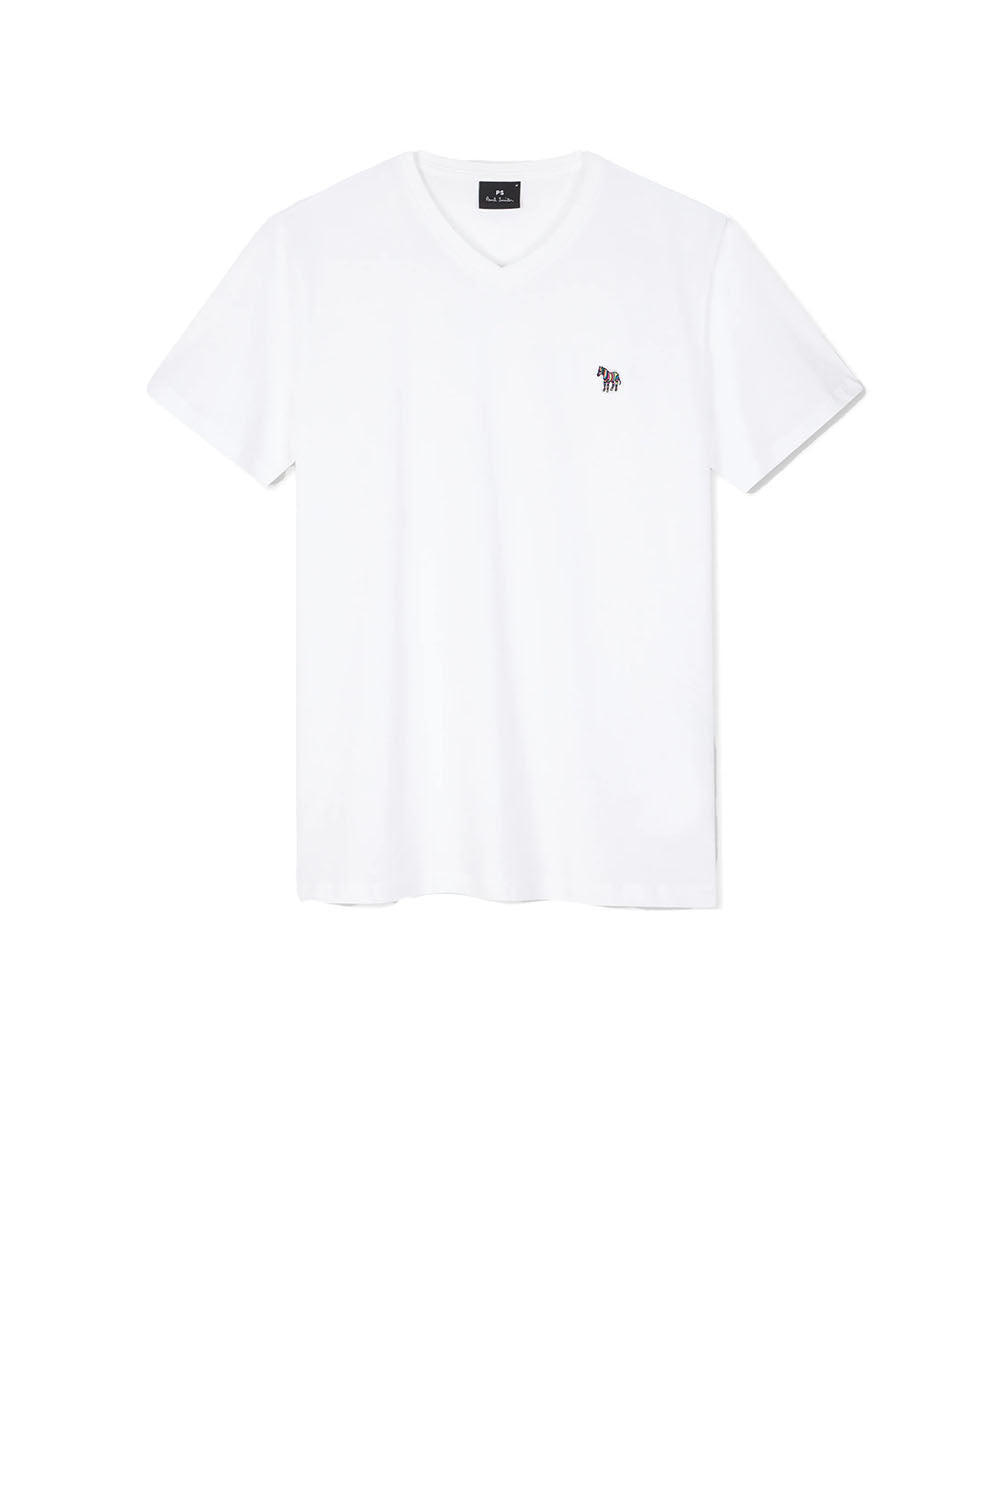  Paul Smith T-shirt With Logo Bianco Uomo - 1